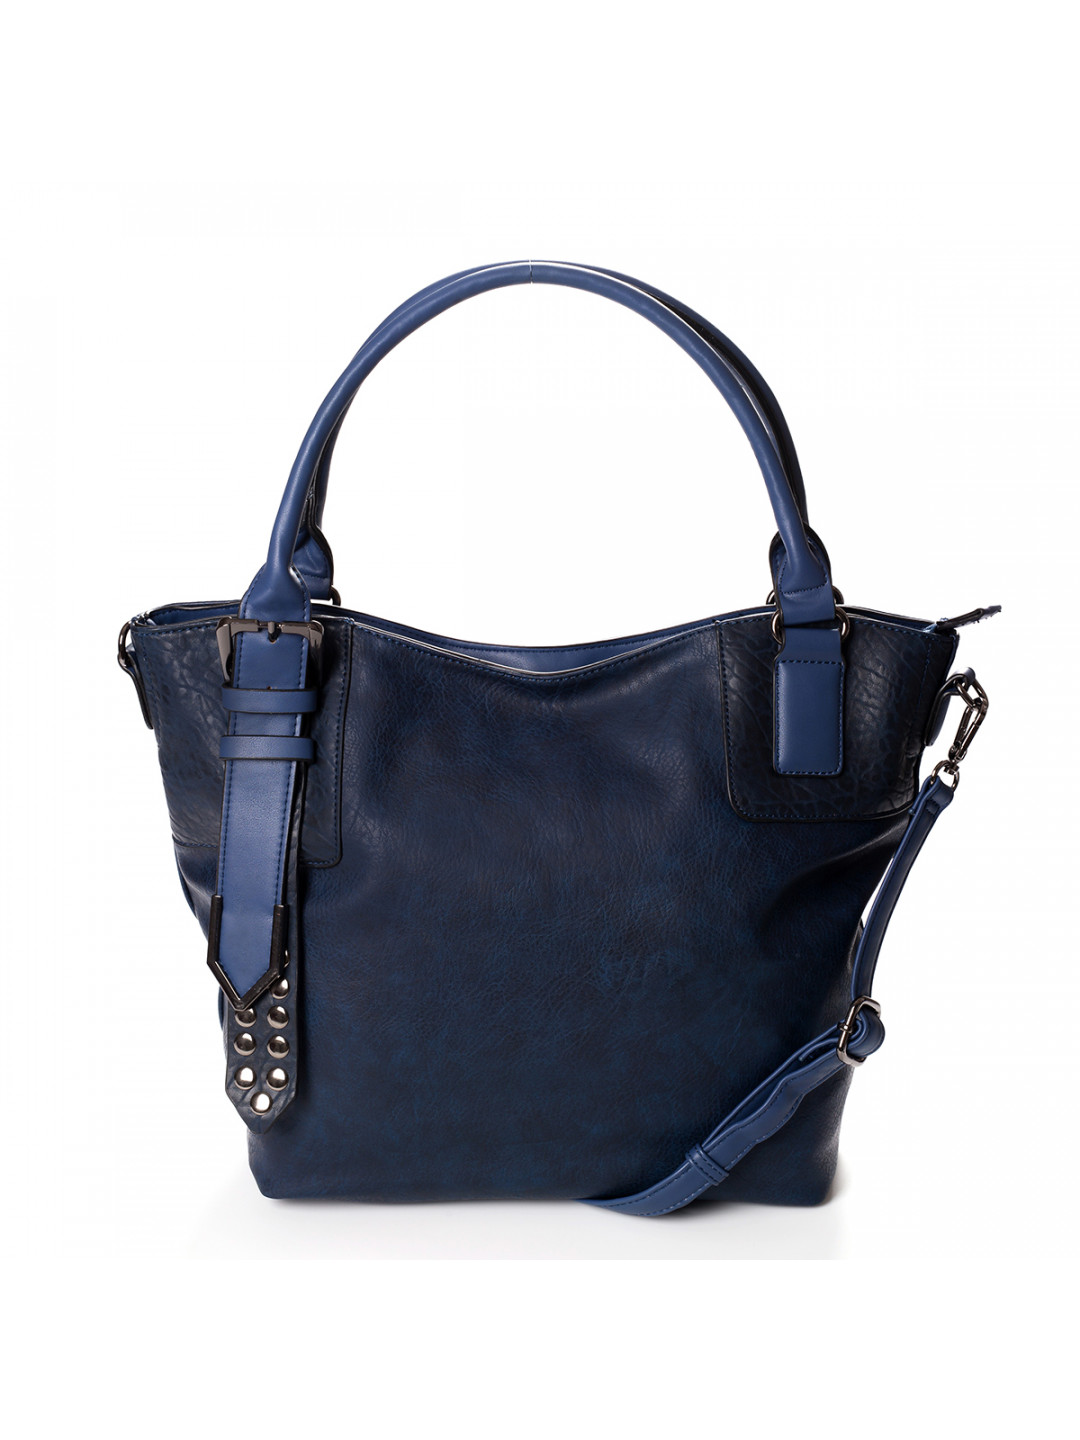 Atraktivní dámská kabelka do ruky Marisa modrá